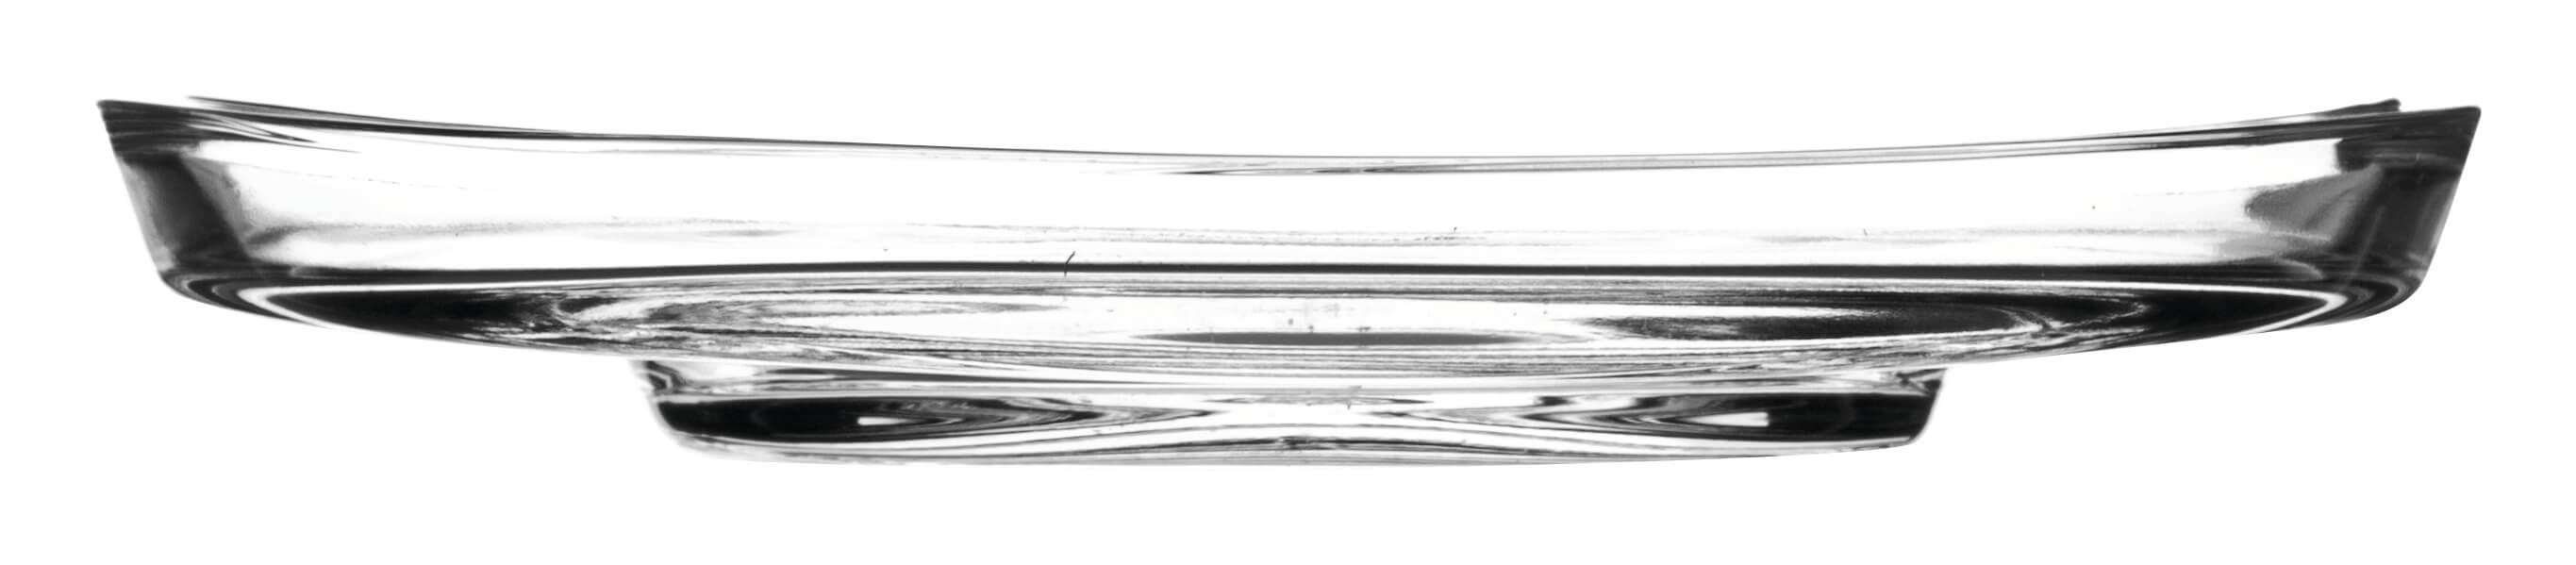 Untertasse Loop, Leonardo - 14cm (1 Stk.)